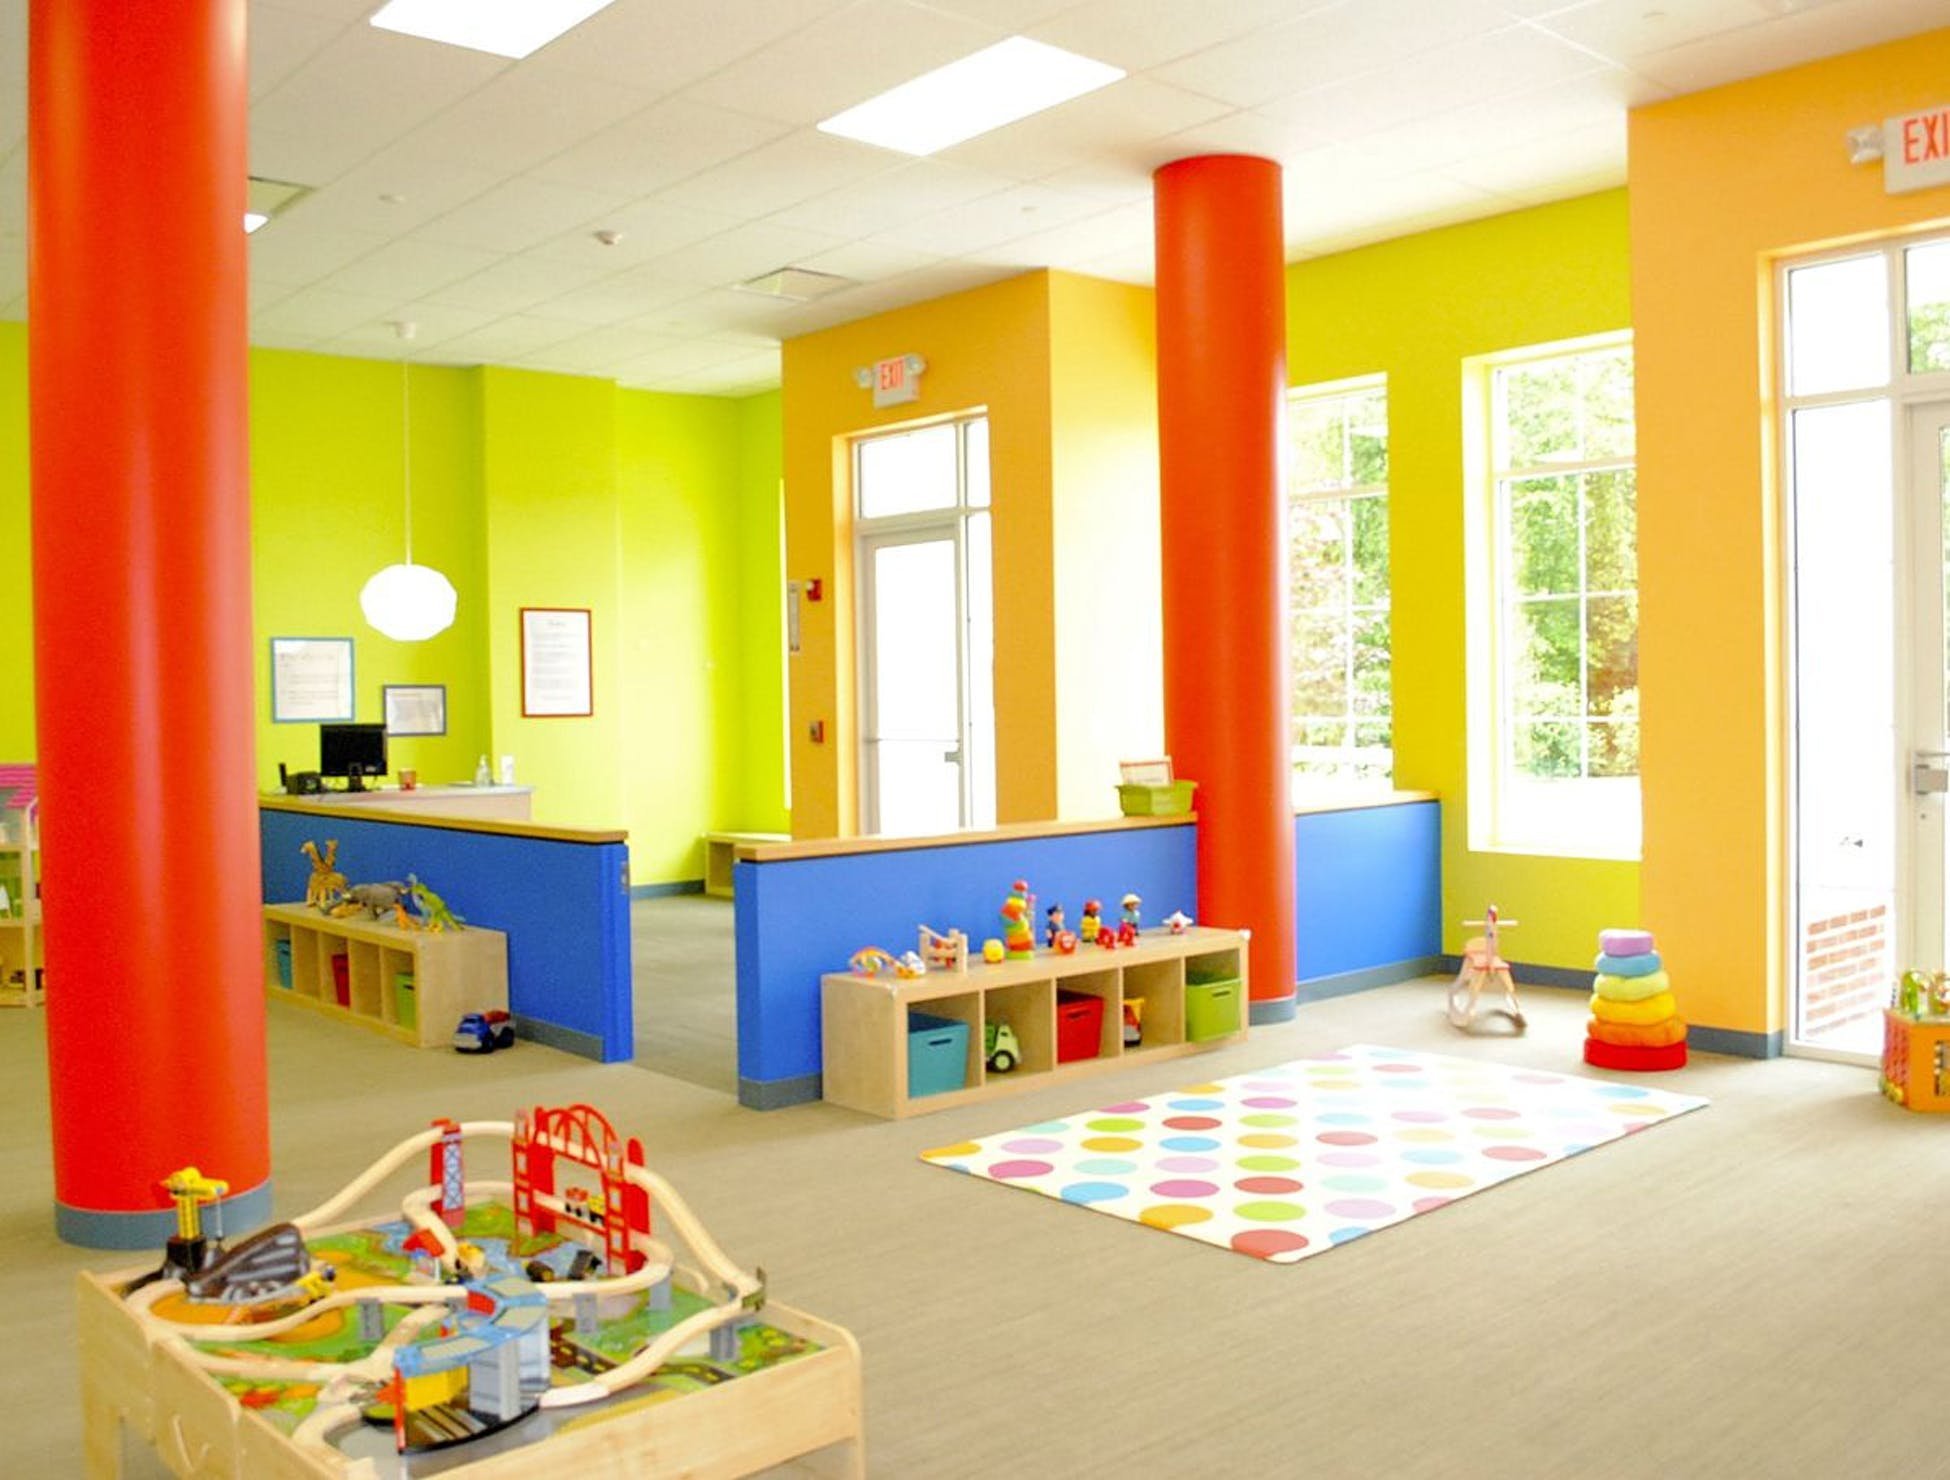 Какие есть детские помещения. Цвет стен в детском саду. Интерьер группы в детском саду. Интерьер детского садика. Помещения детского сада.